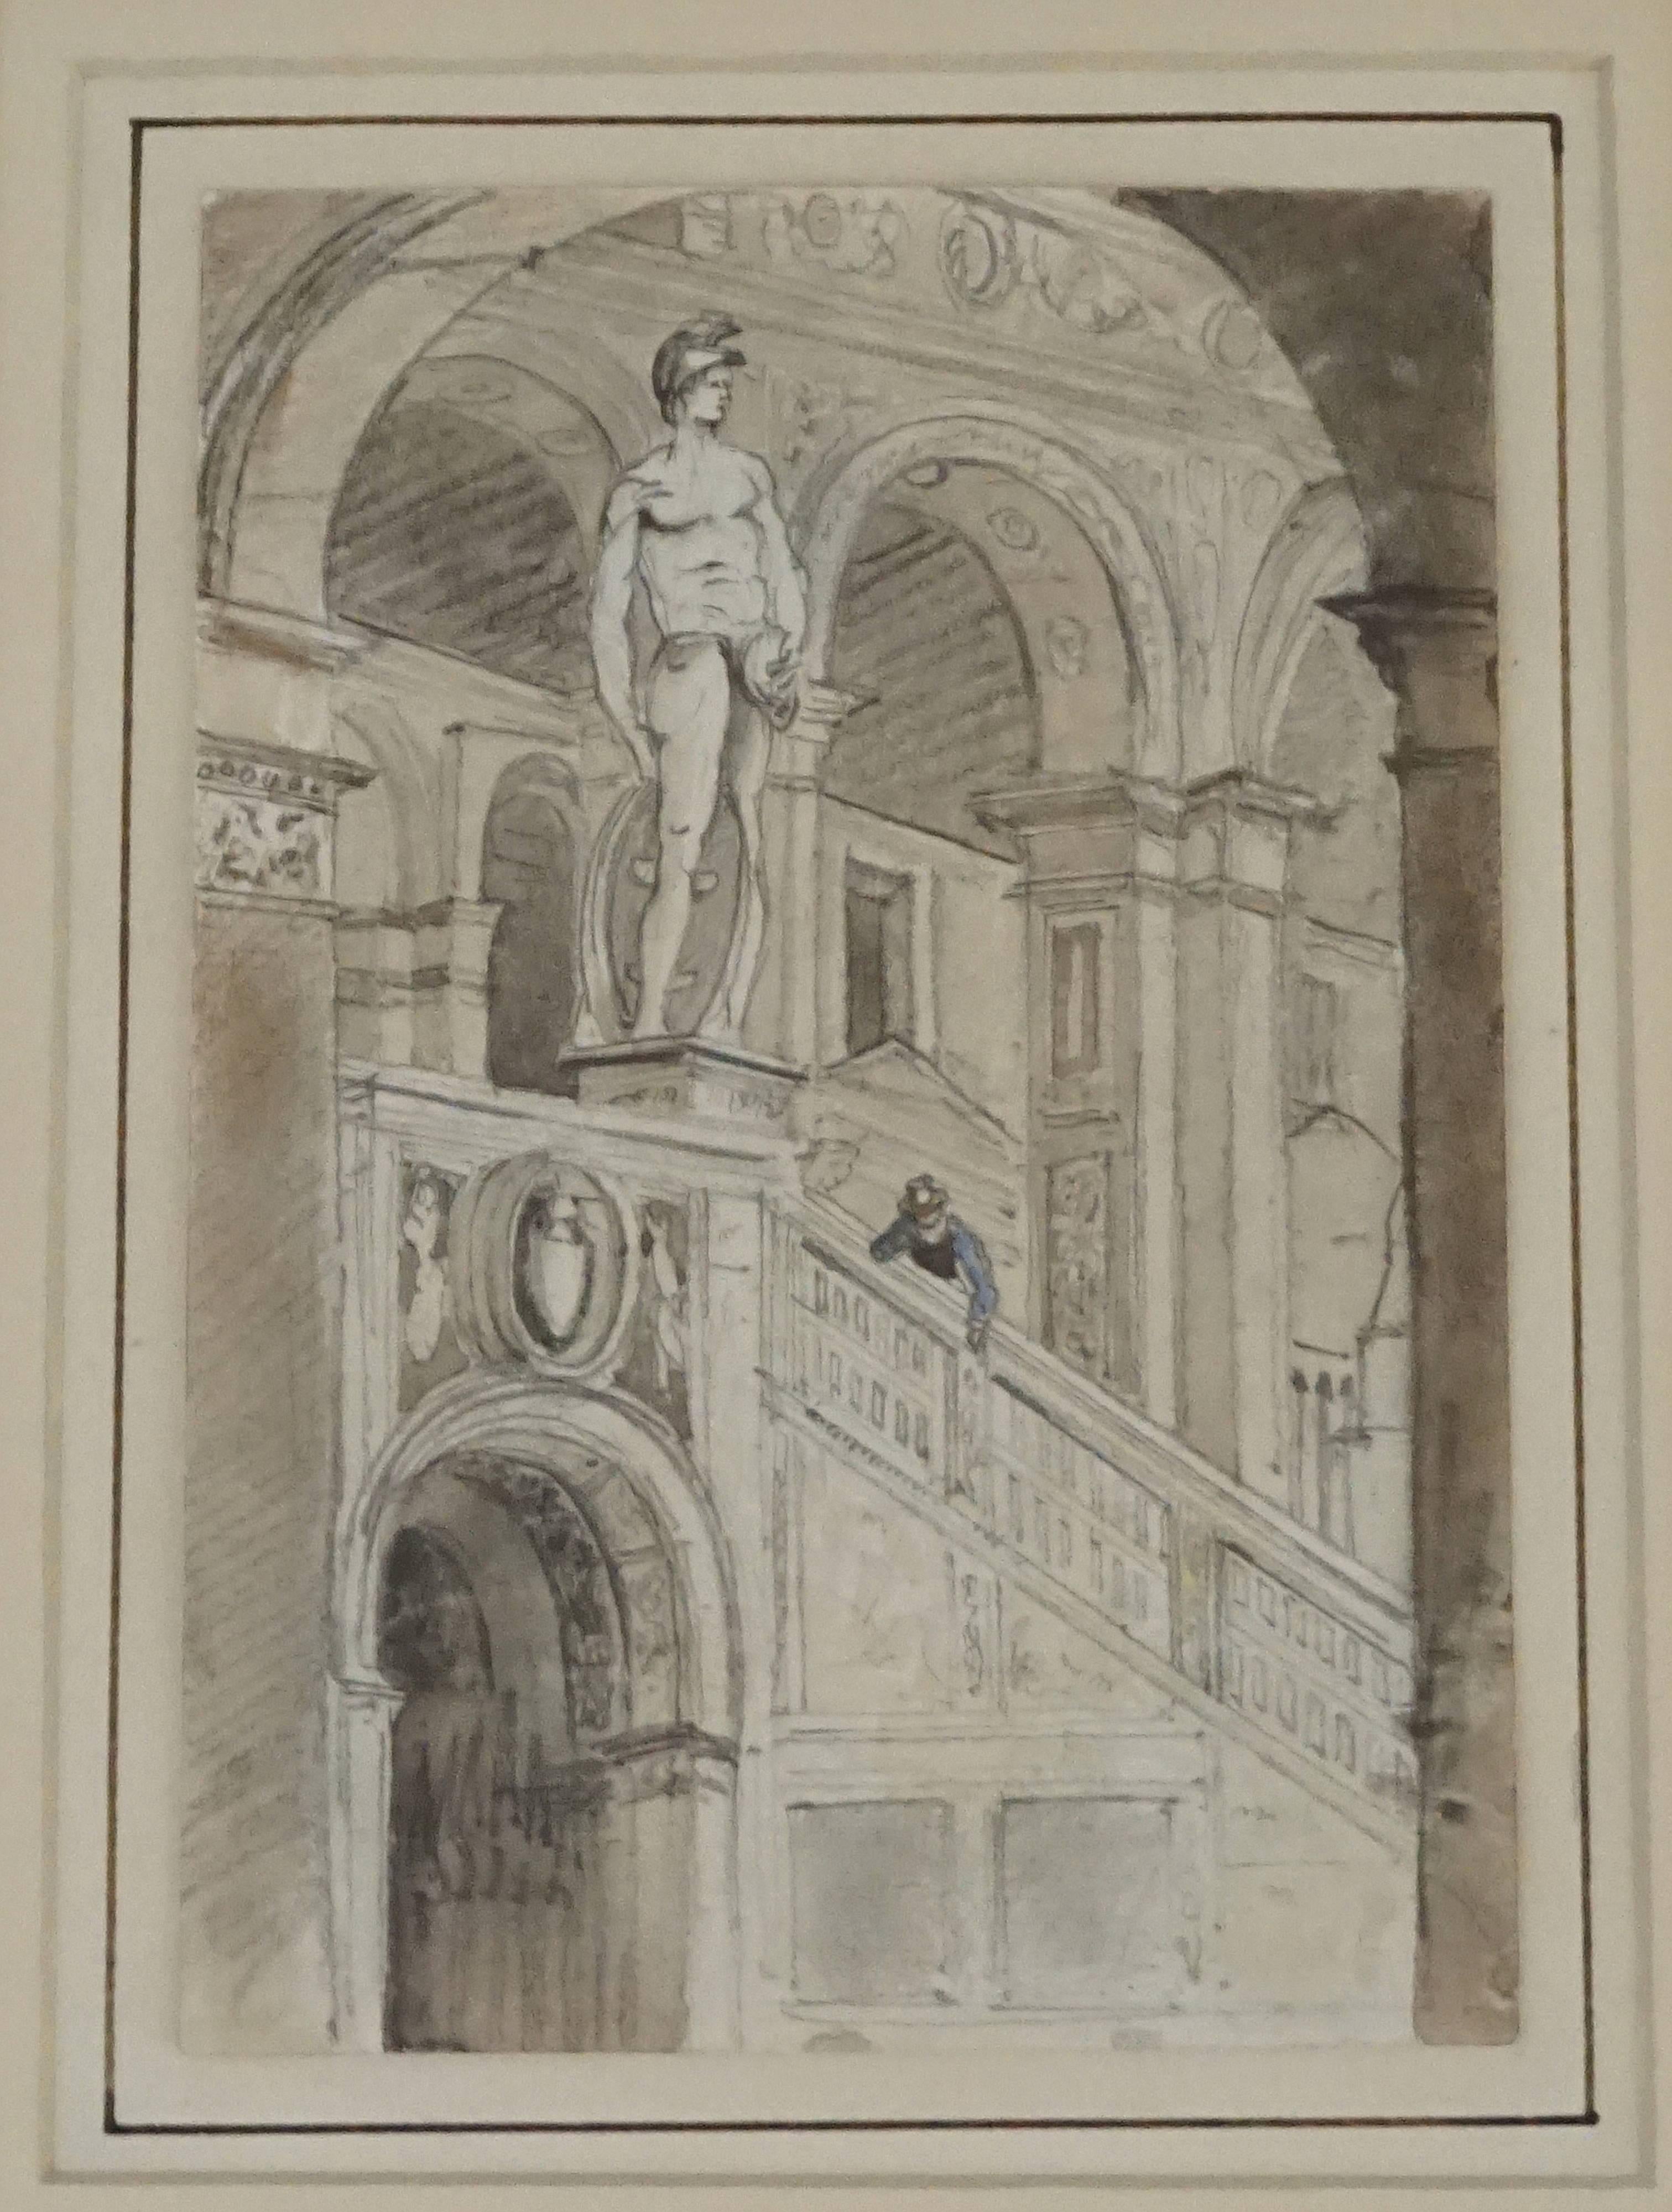 Dessin Grand Tour au fusain et à l'aquarelle exécuté par un touriste anglais en Italie, vers 1800, représentant un gentleman regardant par-dessus la balustrade d'un escalier dans un intérieur baroque entouré d'arches et de statues ; conservation